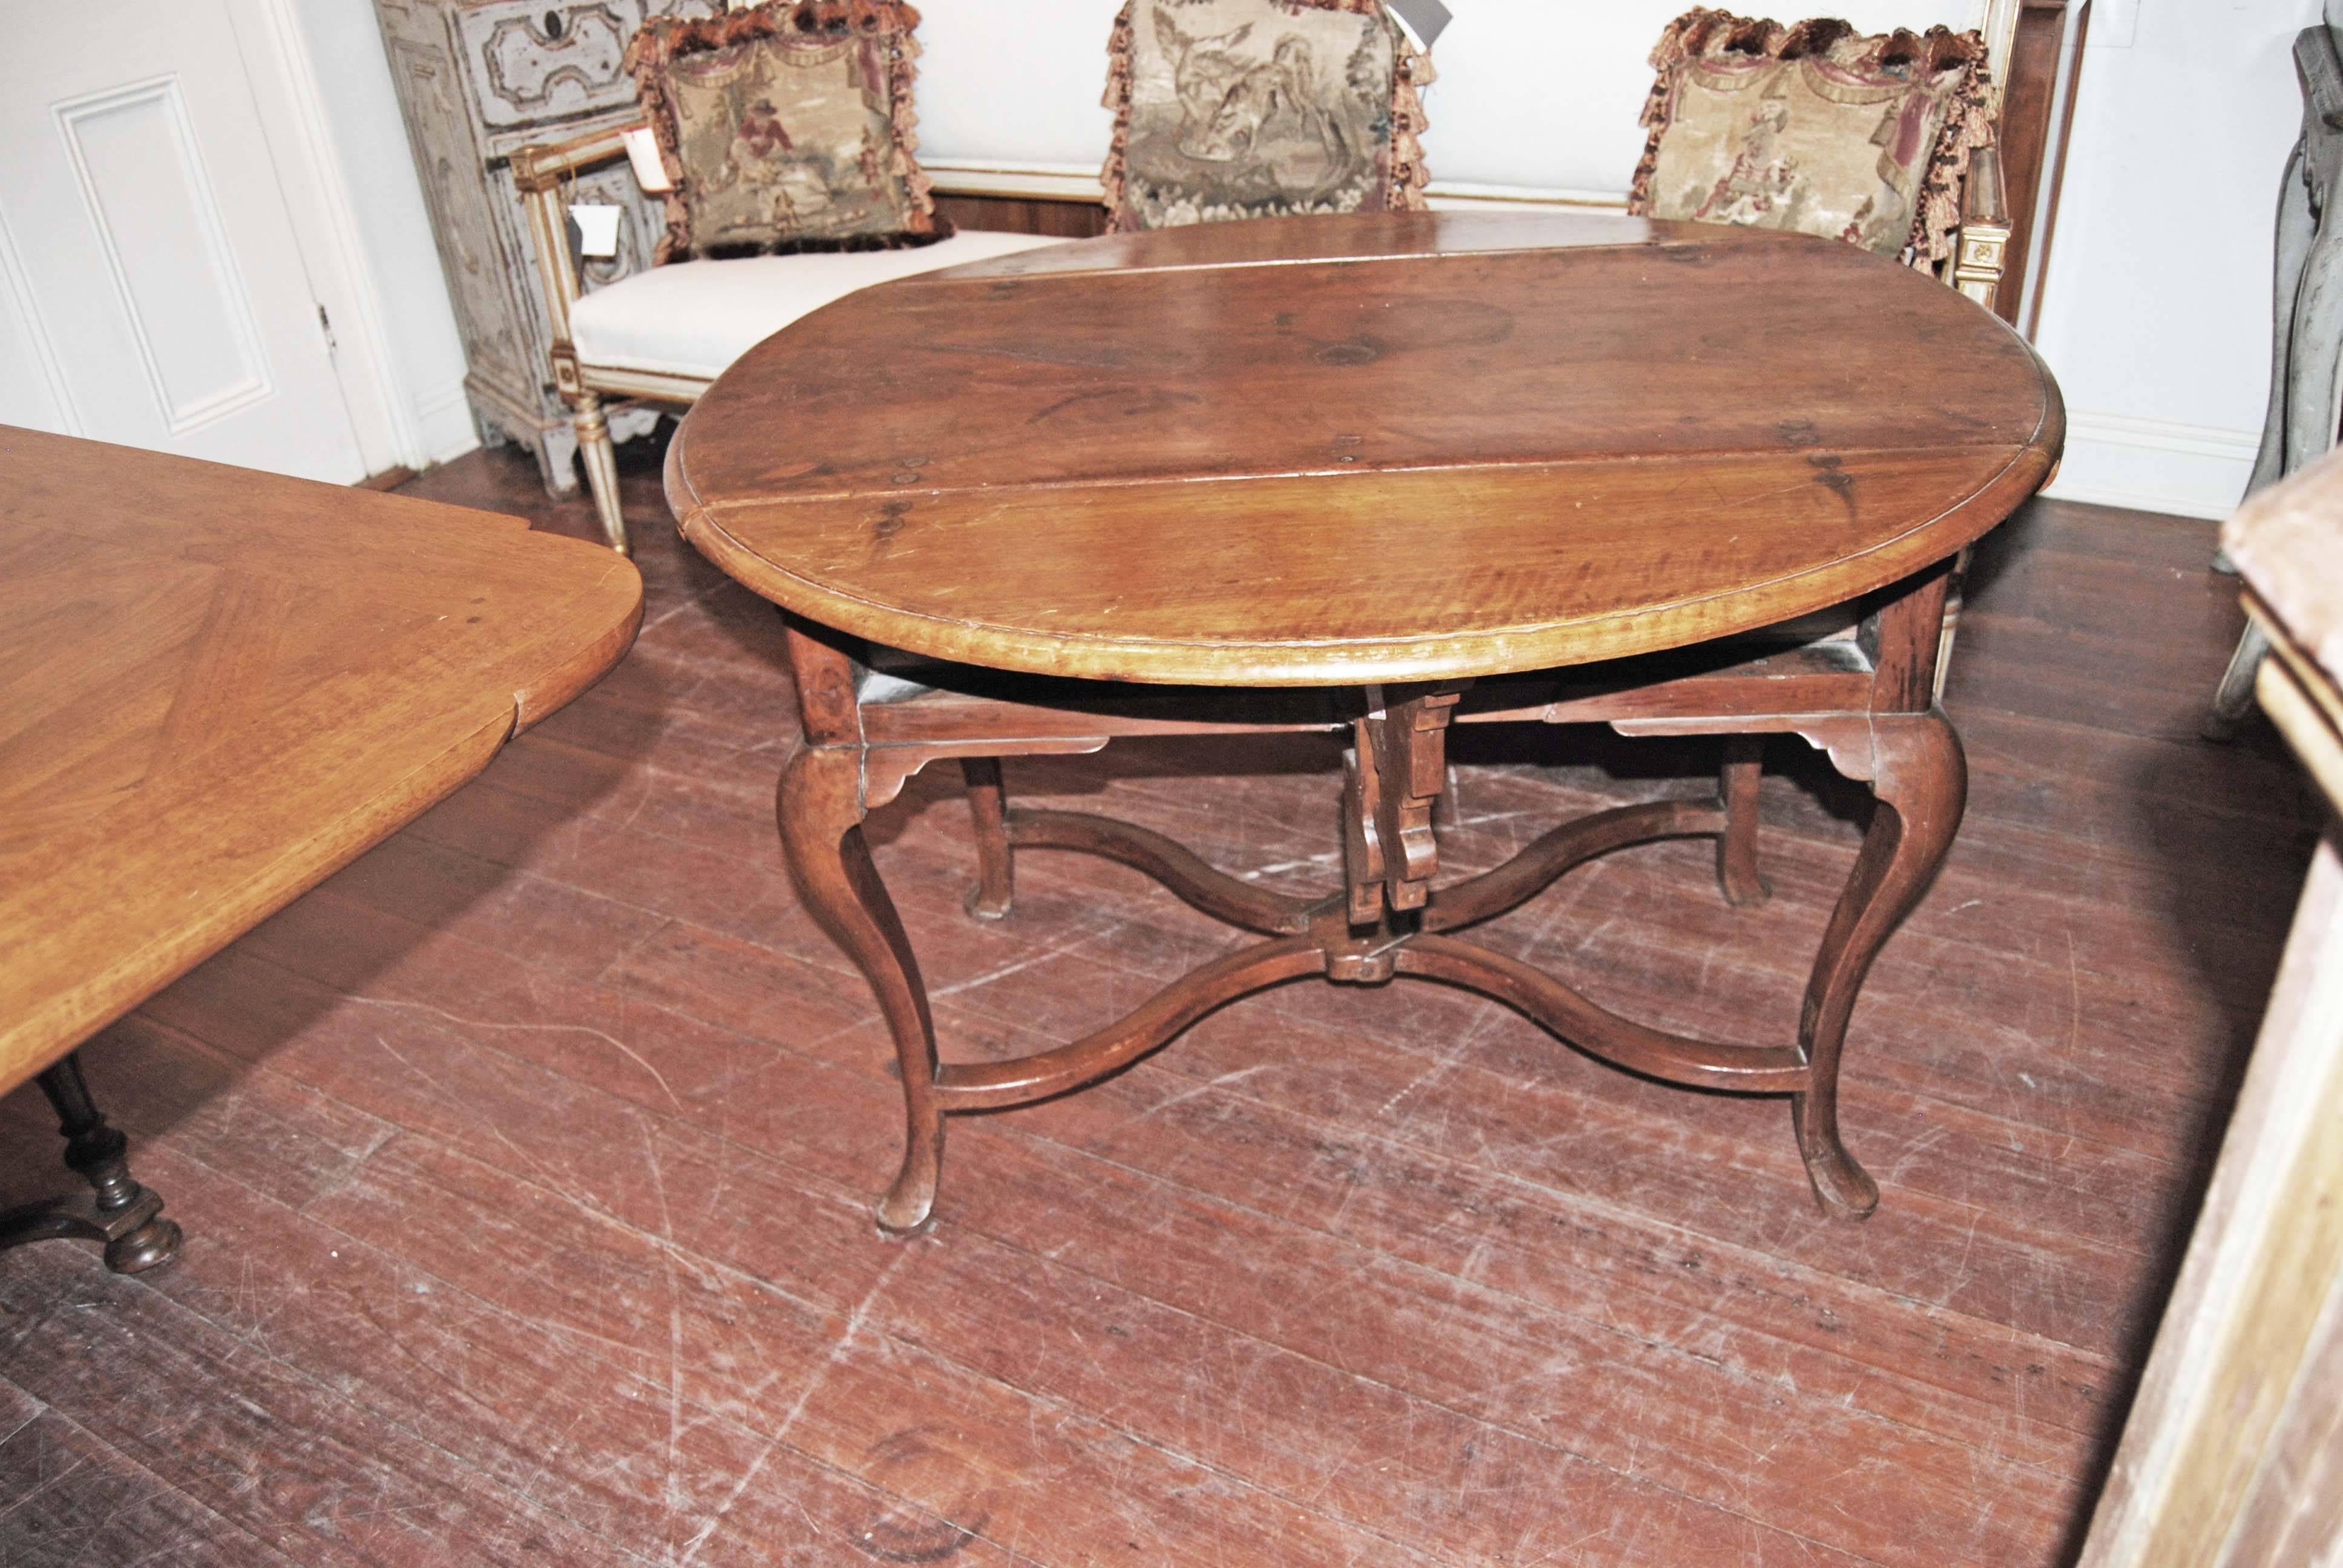 19th century walnut drop leaf table.